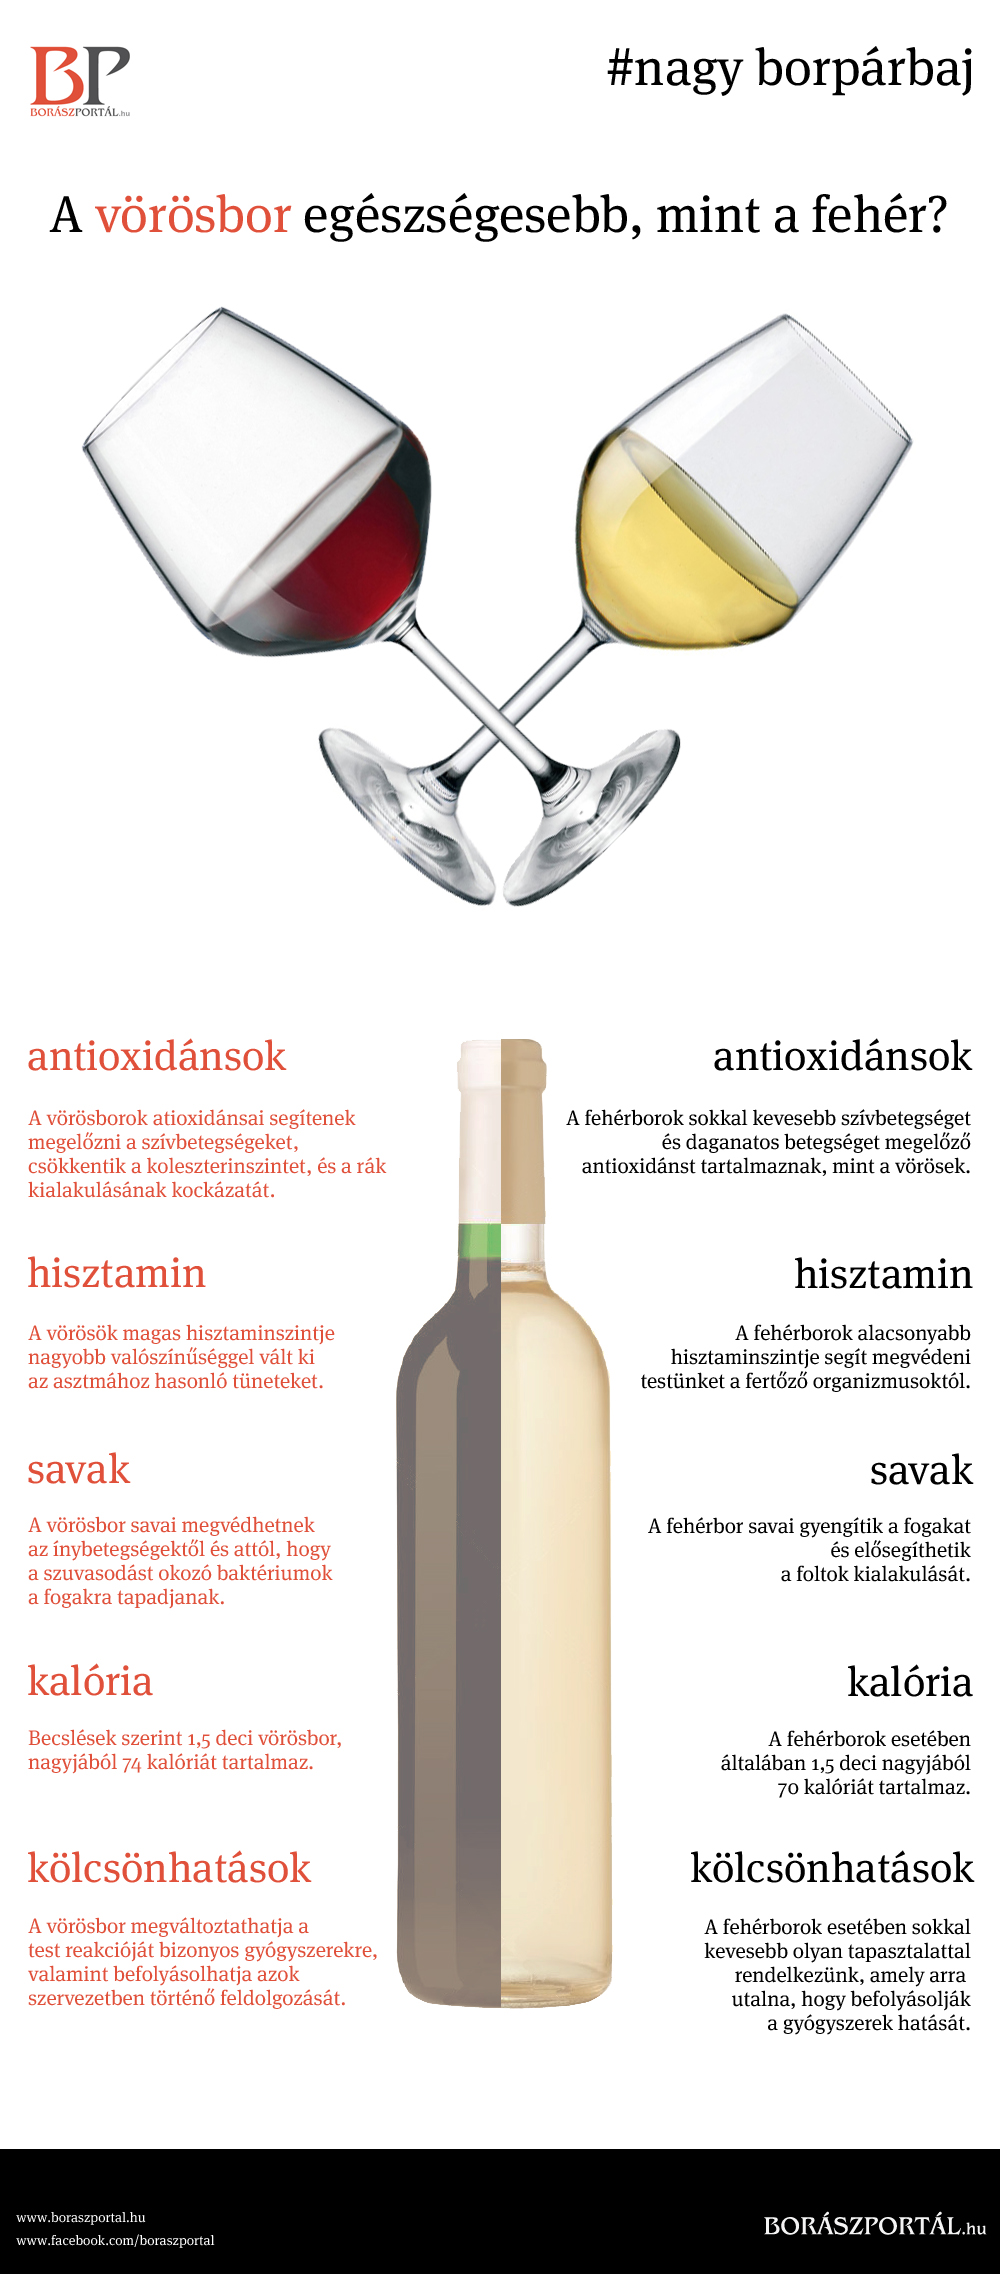 A vörösborban is az alkohol az egészséges